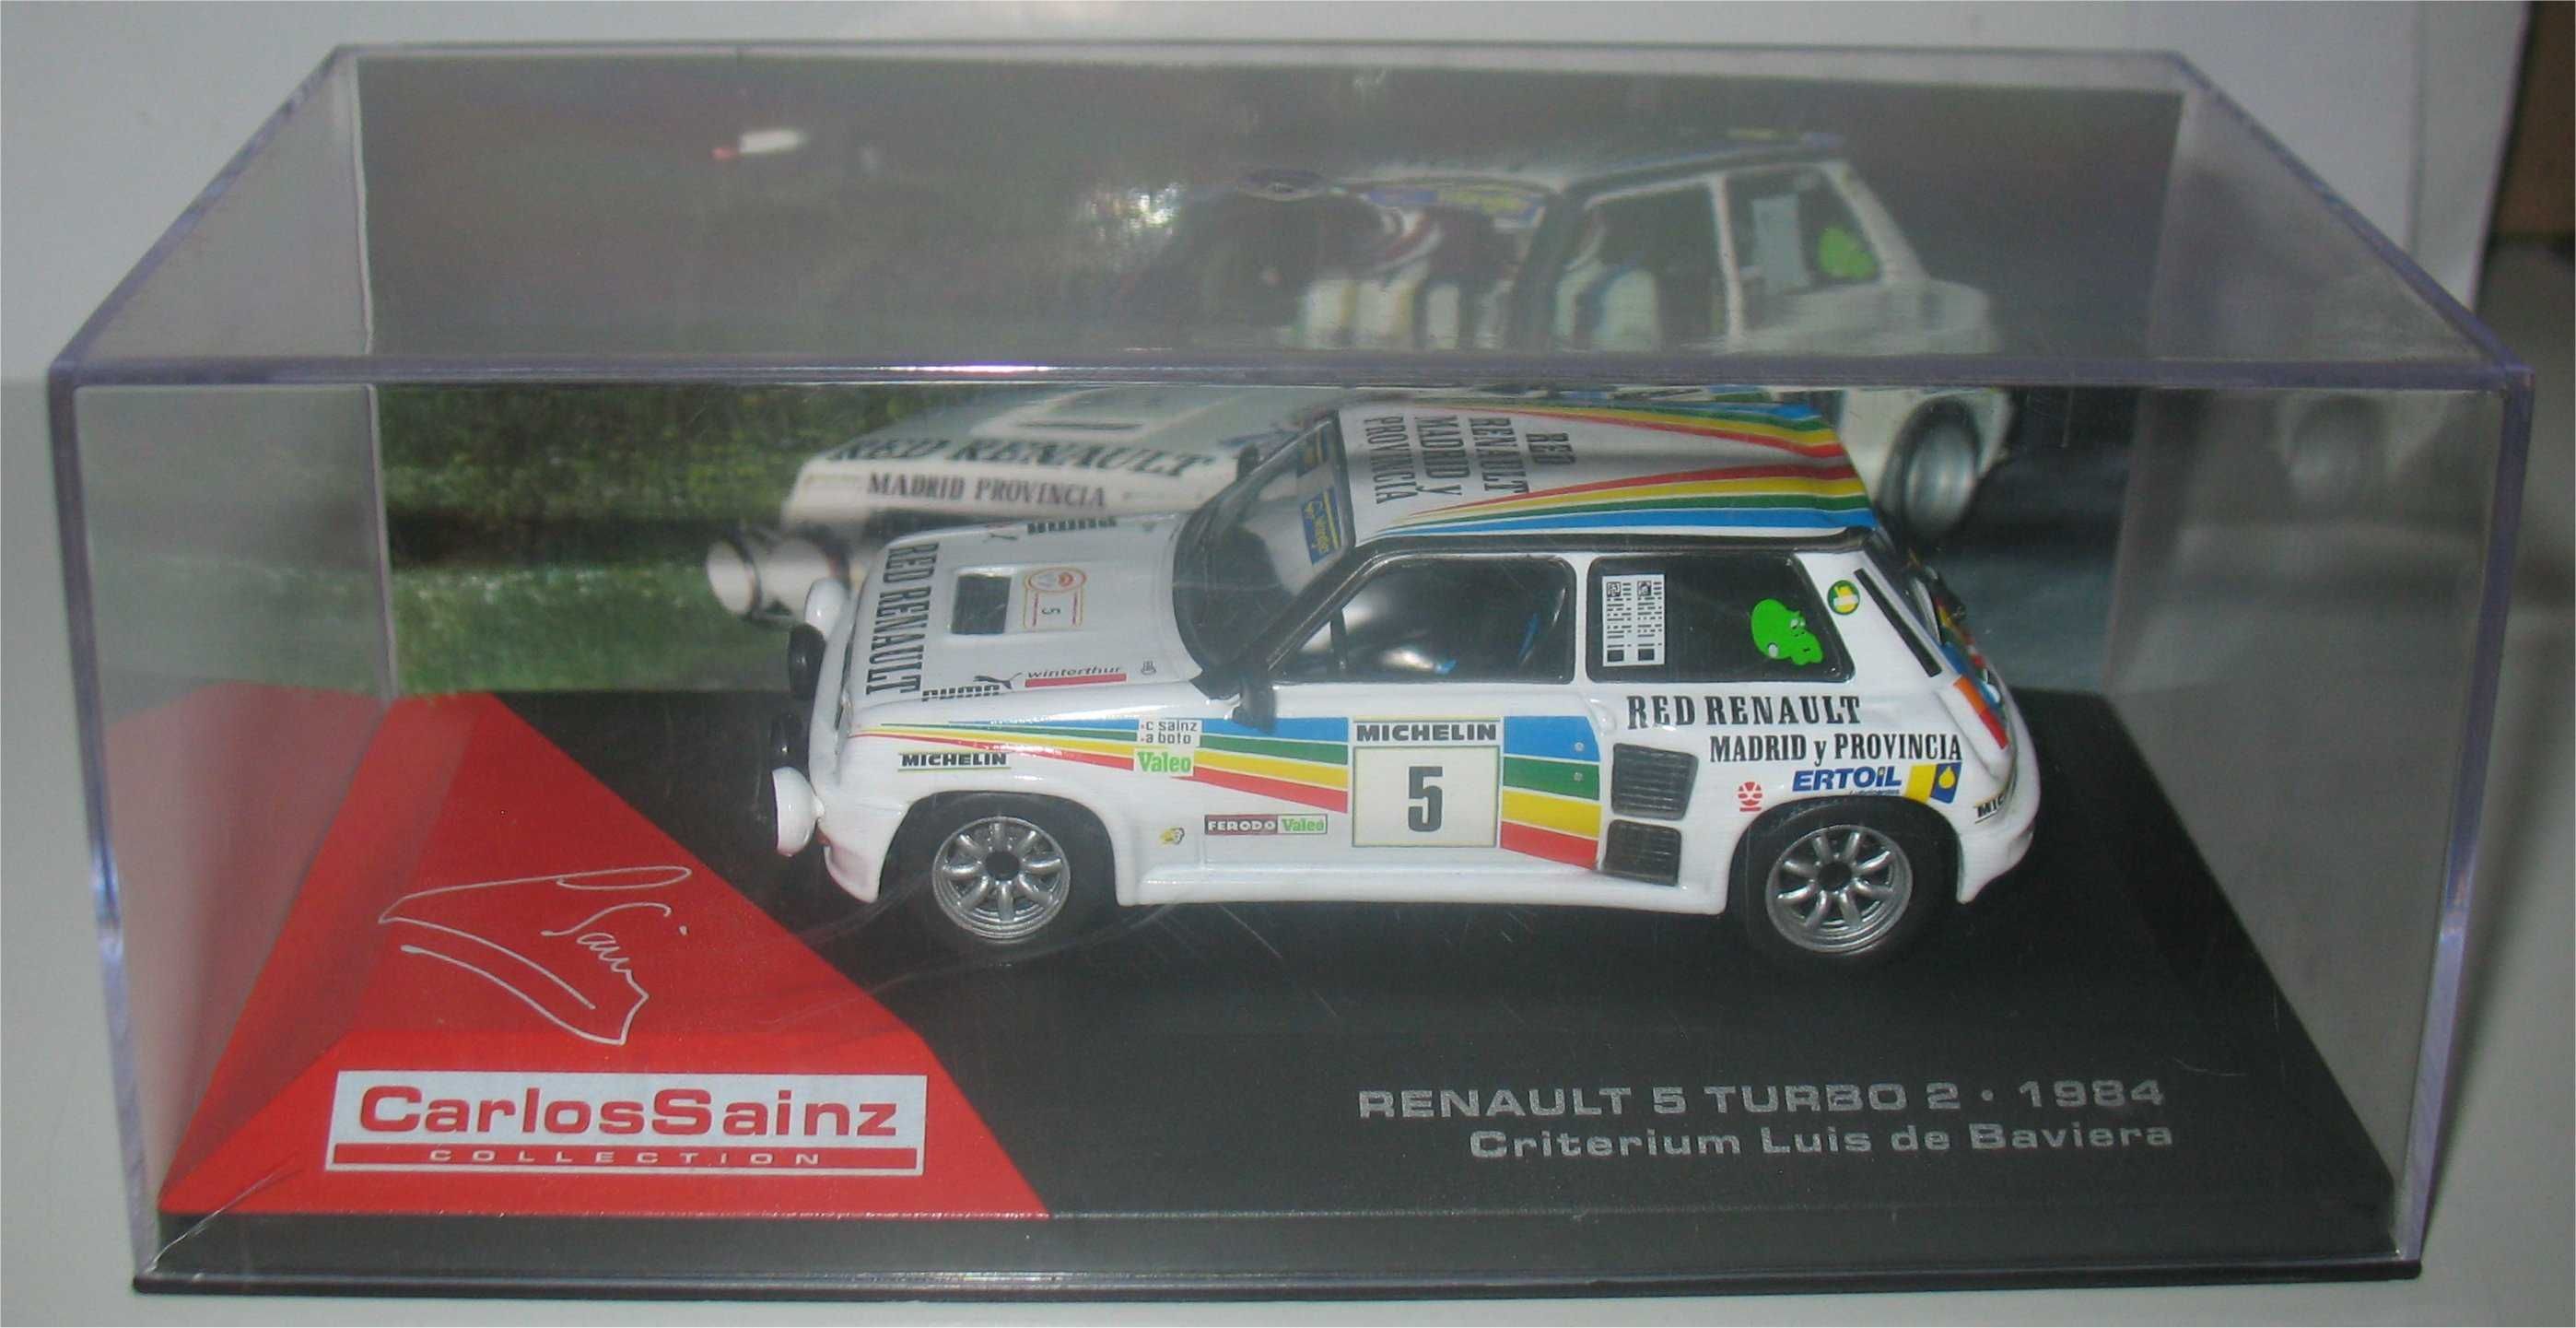 Renault 5 Turbo - Rally Critérium Luis de Baviera - Carlos Sainz